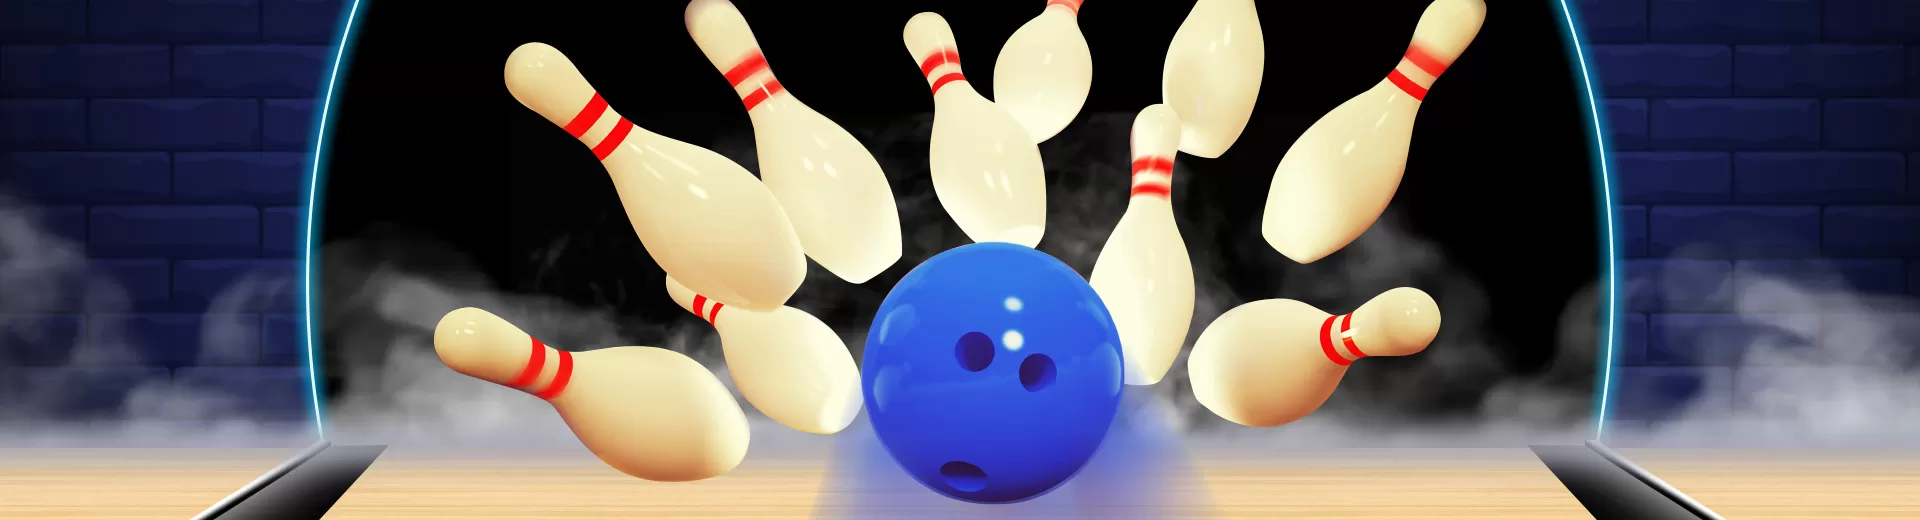 Strike Ten Pin Bowling Emulator Pc